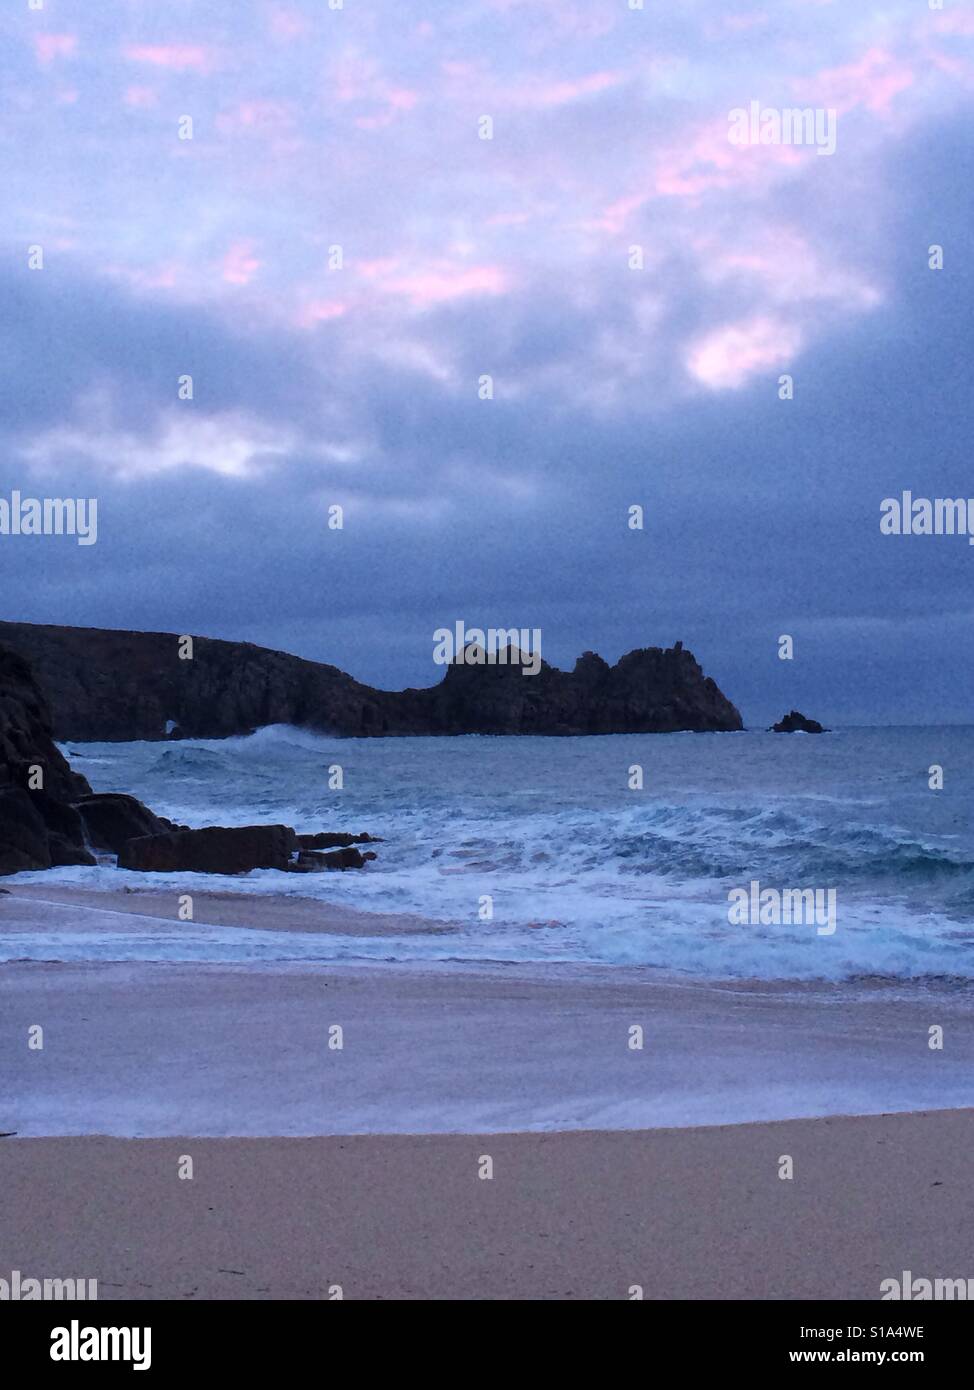 UK weather: sunrise at Porthcurno beach Stock Photo